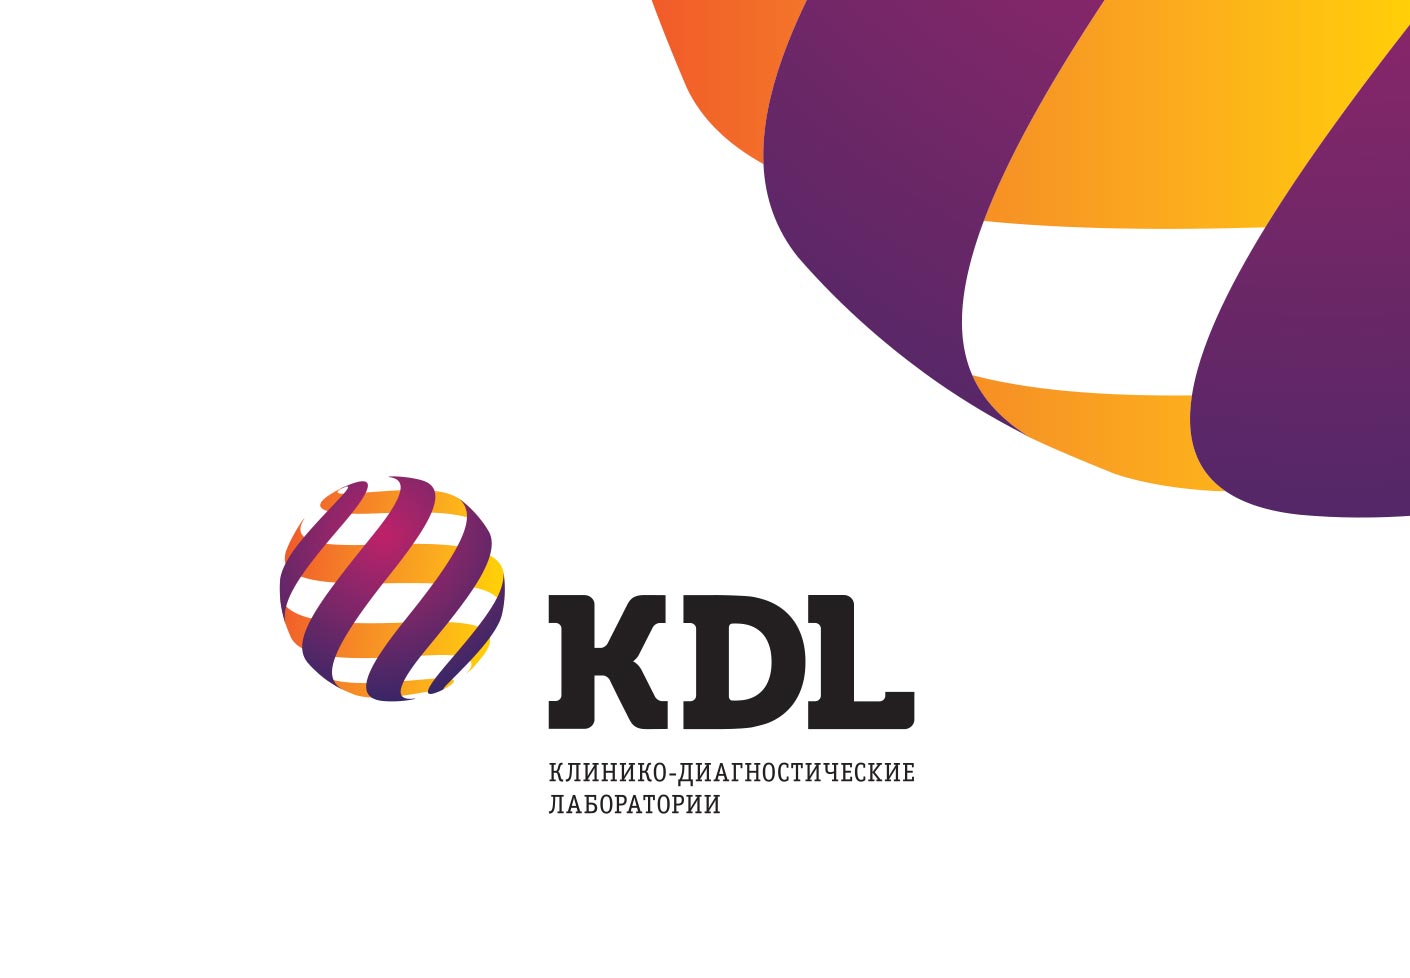 Кдл тест. КДЛ. КДЛ лаборатория. КДЛ лого. Лаборатория KDL логотип.